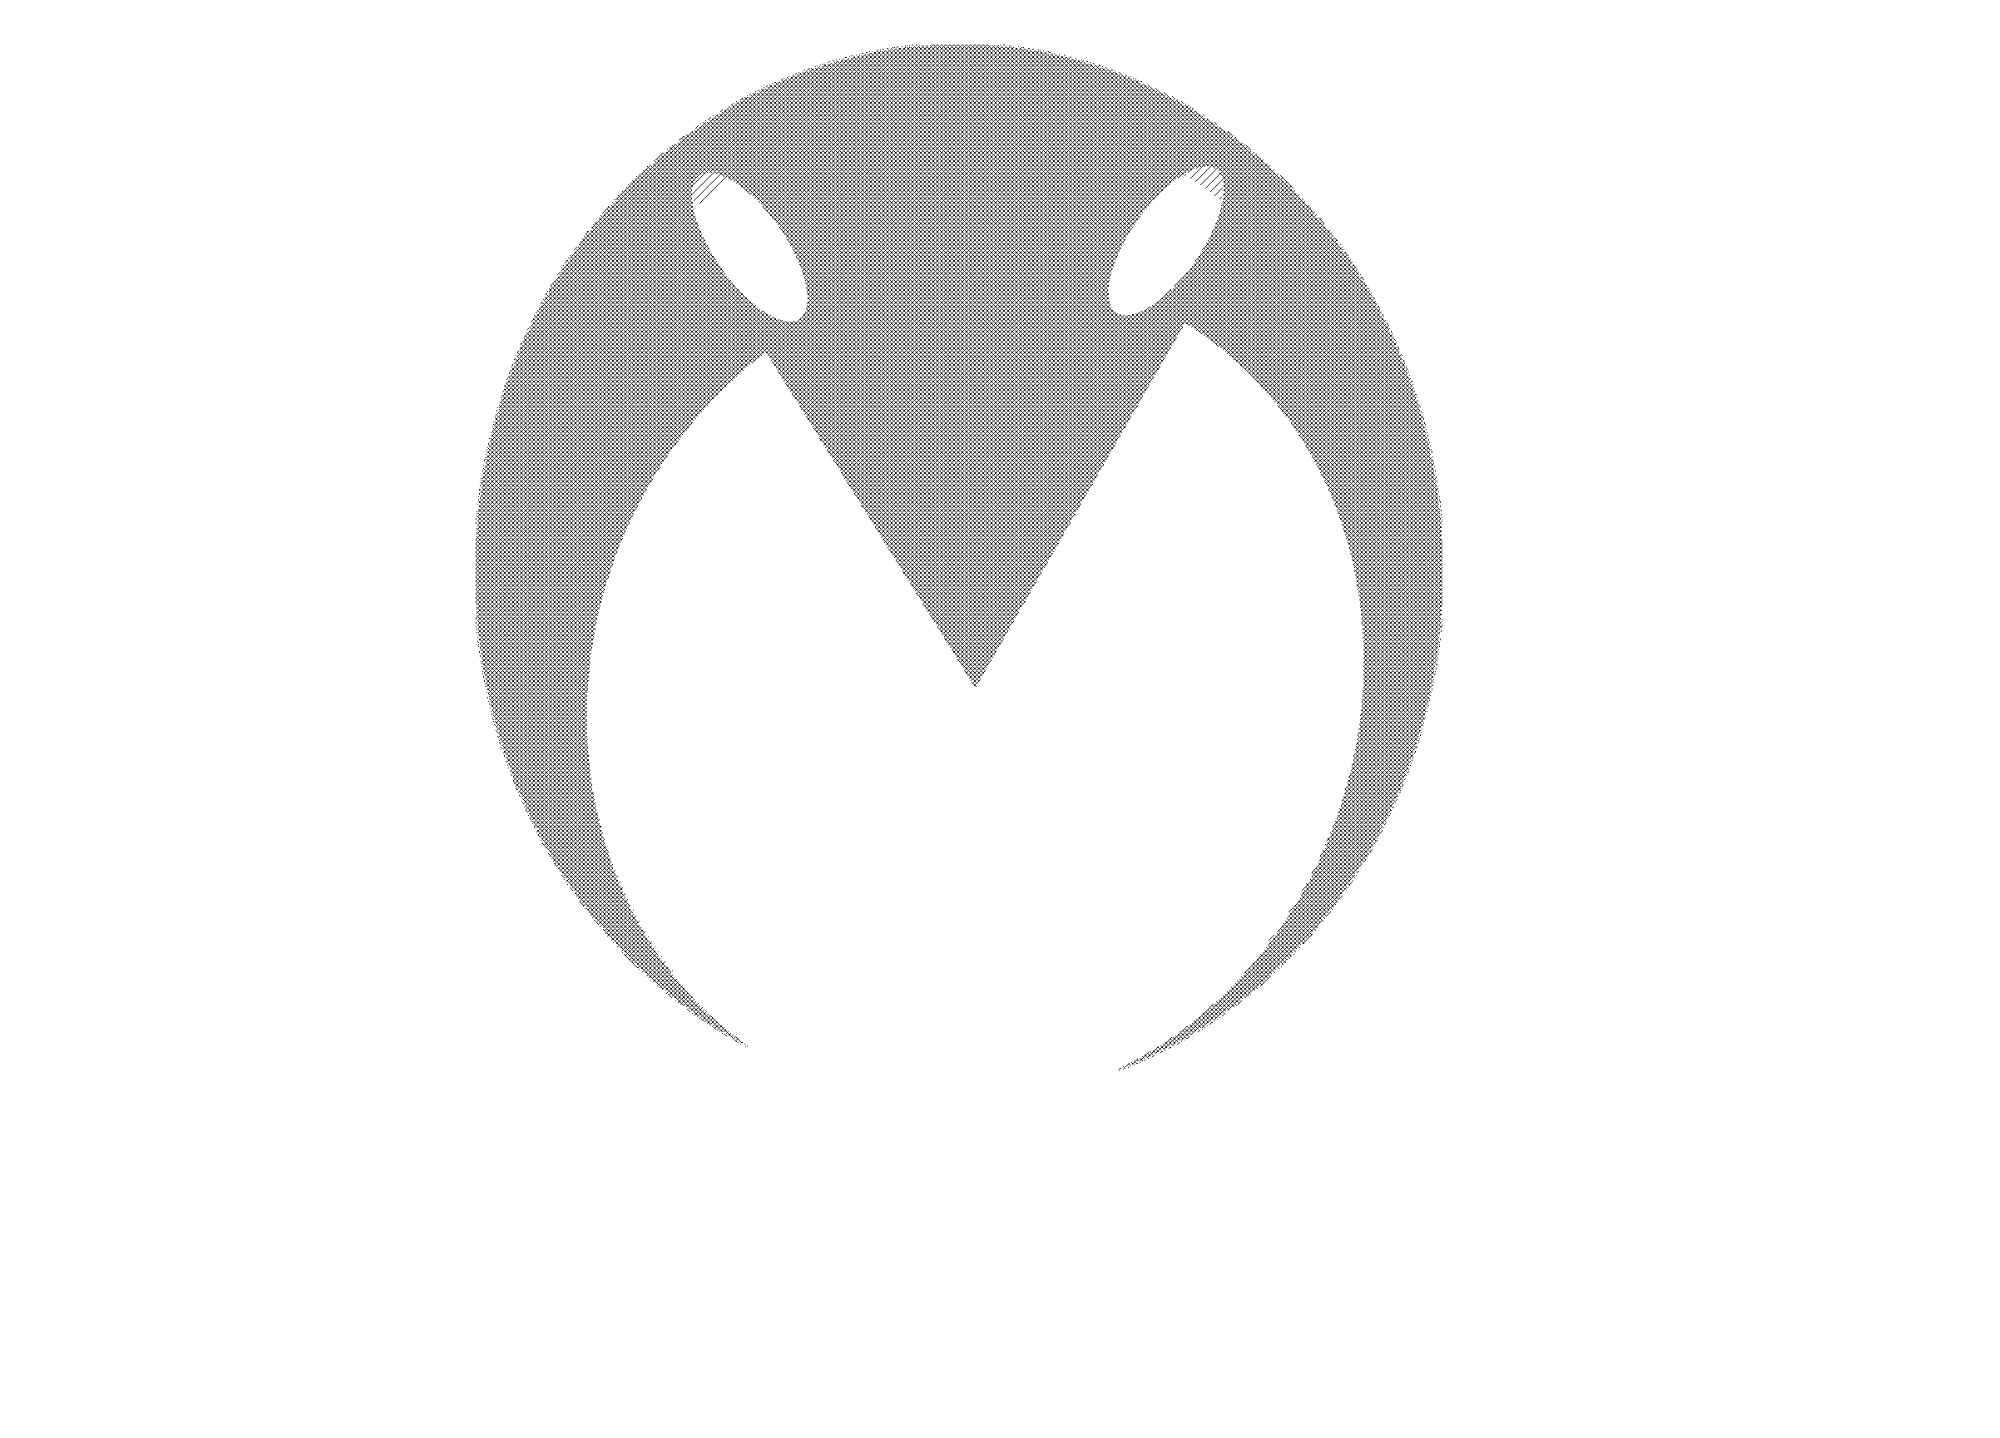 SIRIUS OS